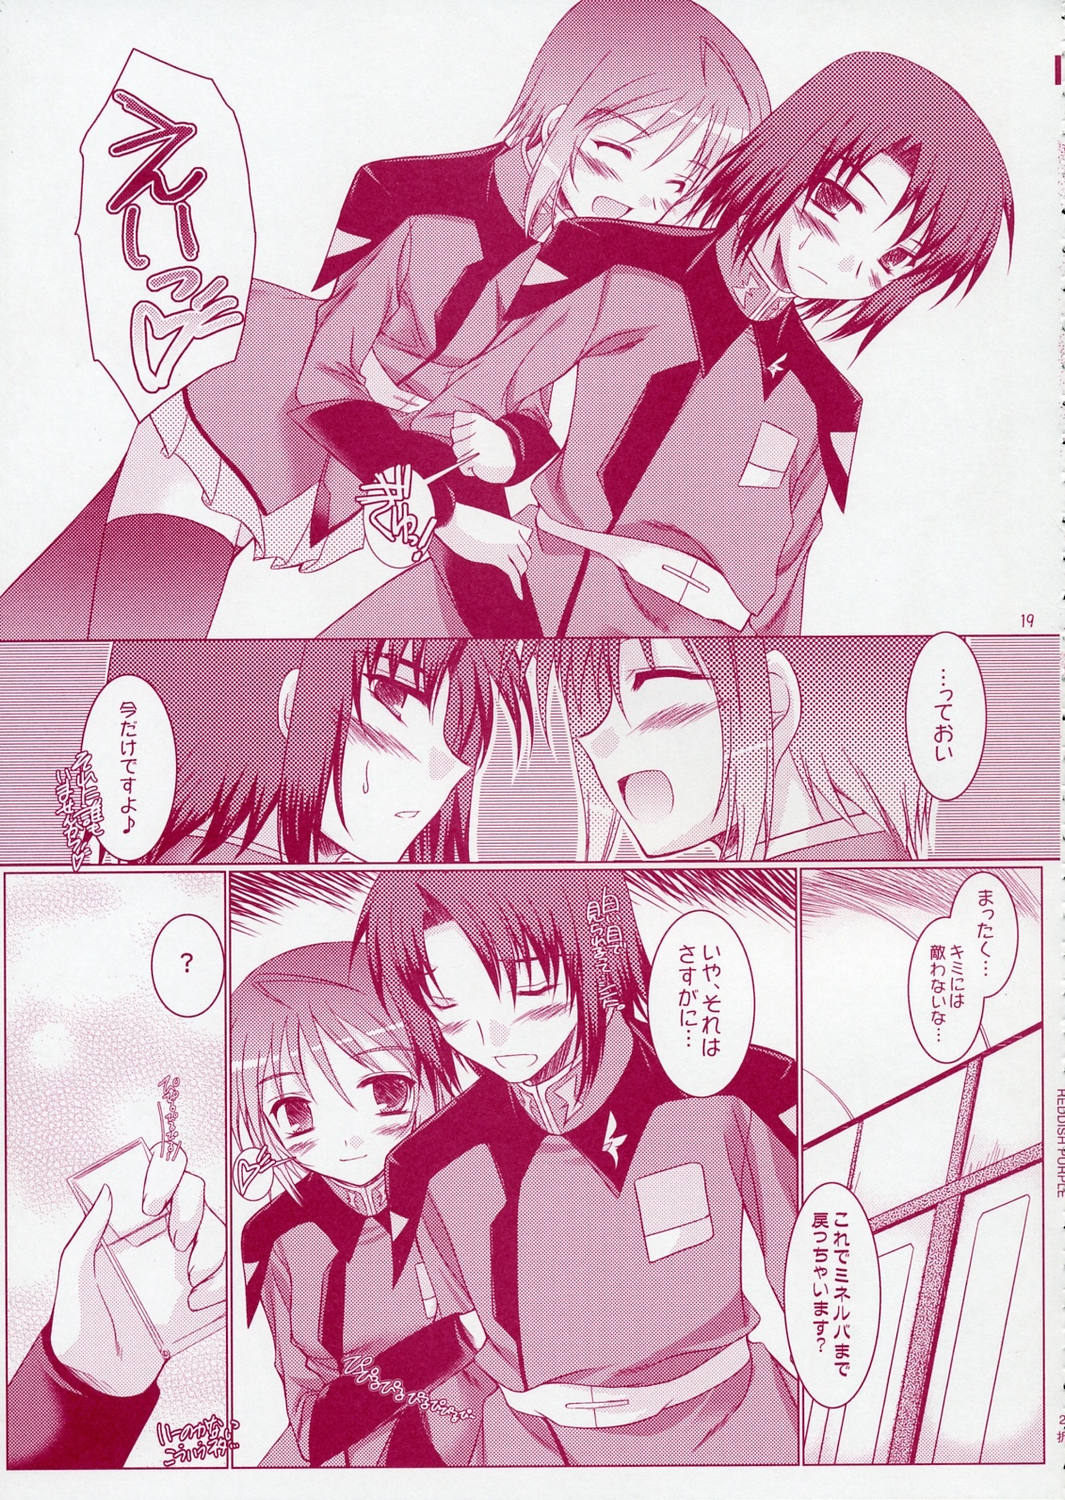 (SC28) [Ponbikiya, Suirankaku (Ibuki Pon)] REDDISH PURPLE-02B (Gundam Seed Destiny) page 18 full